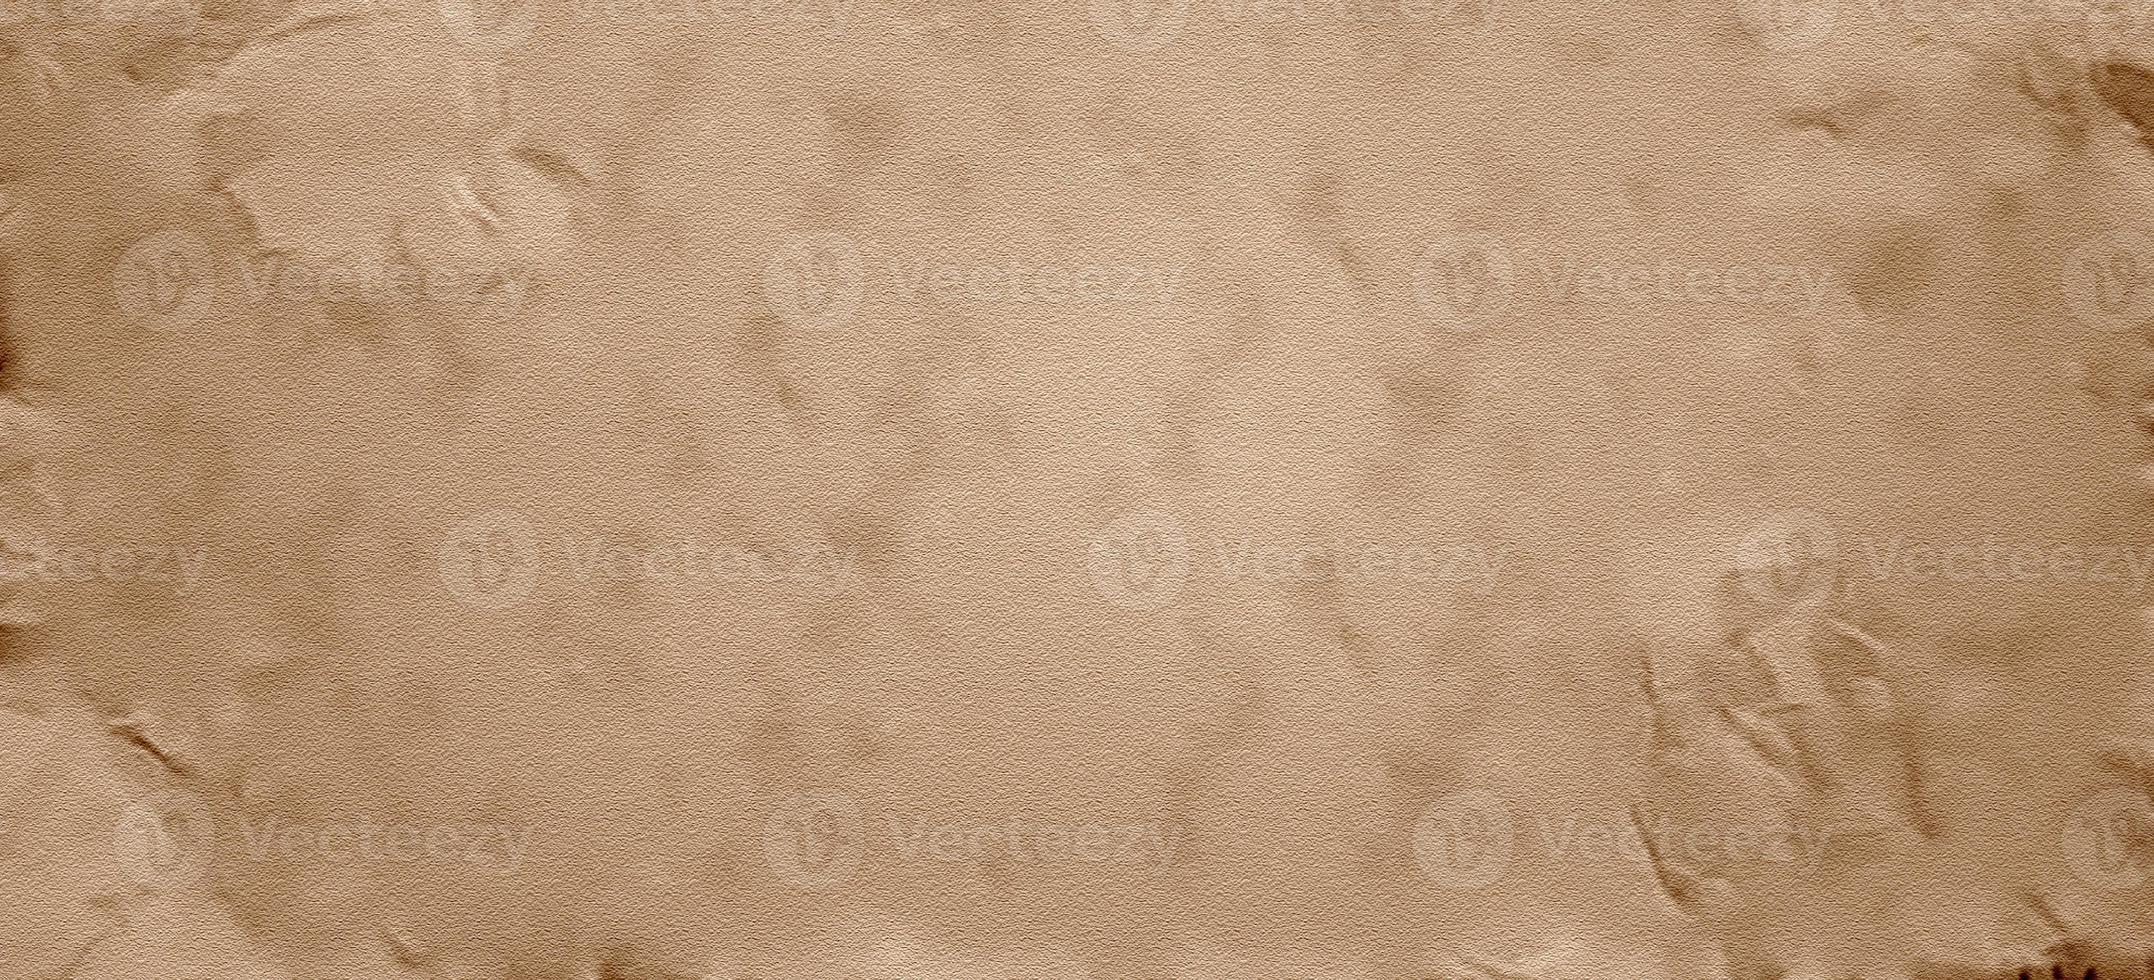 kartonpapier voor achtergrond. oude perkamentpapier textuur foto